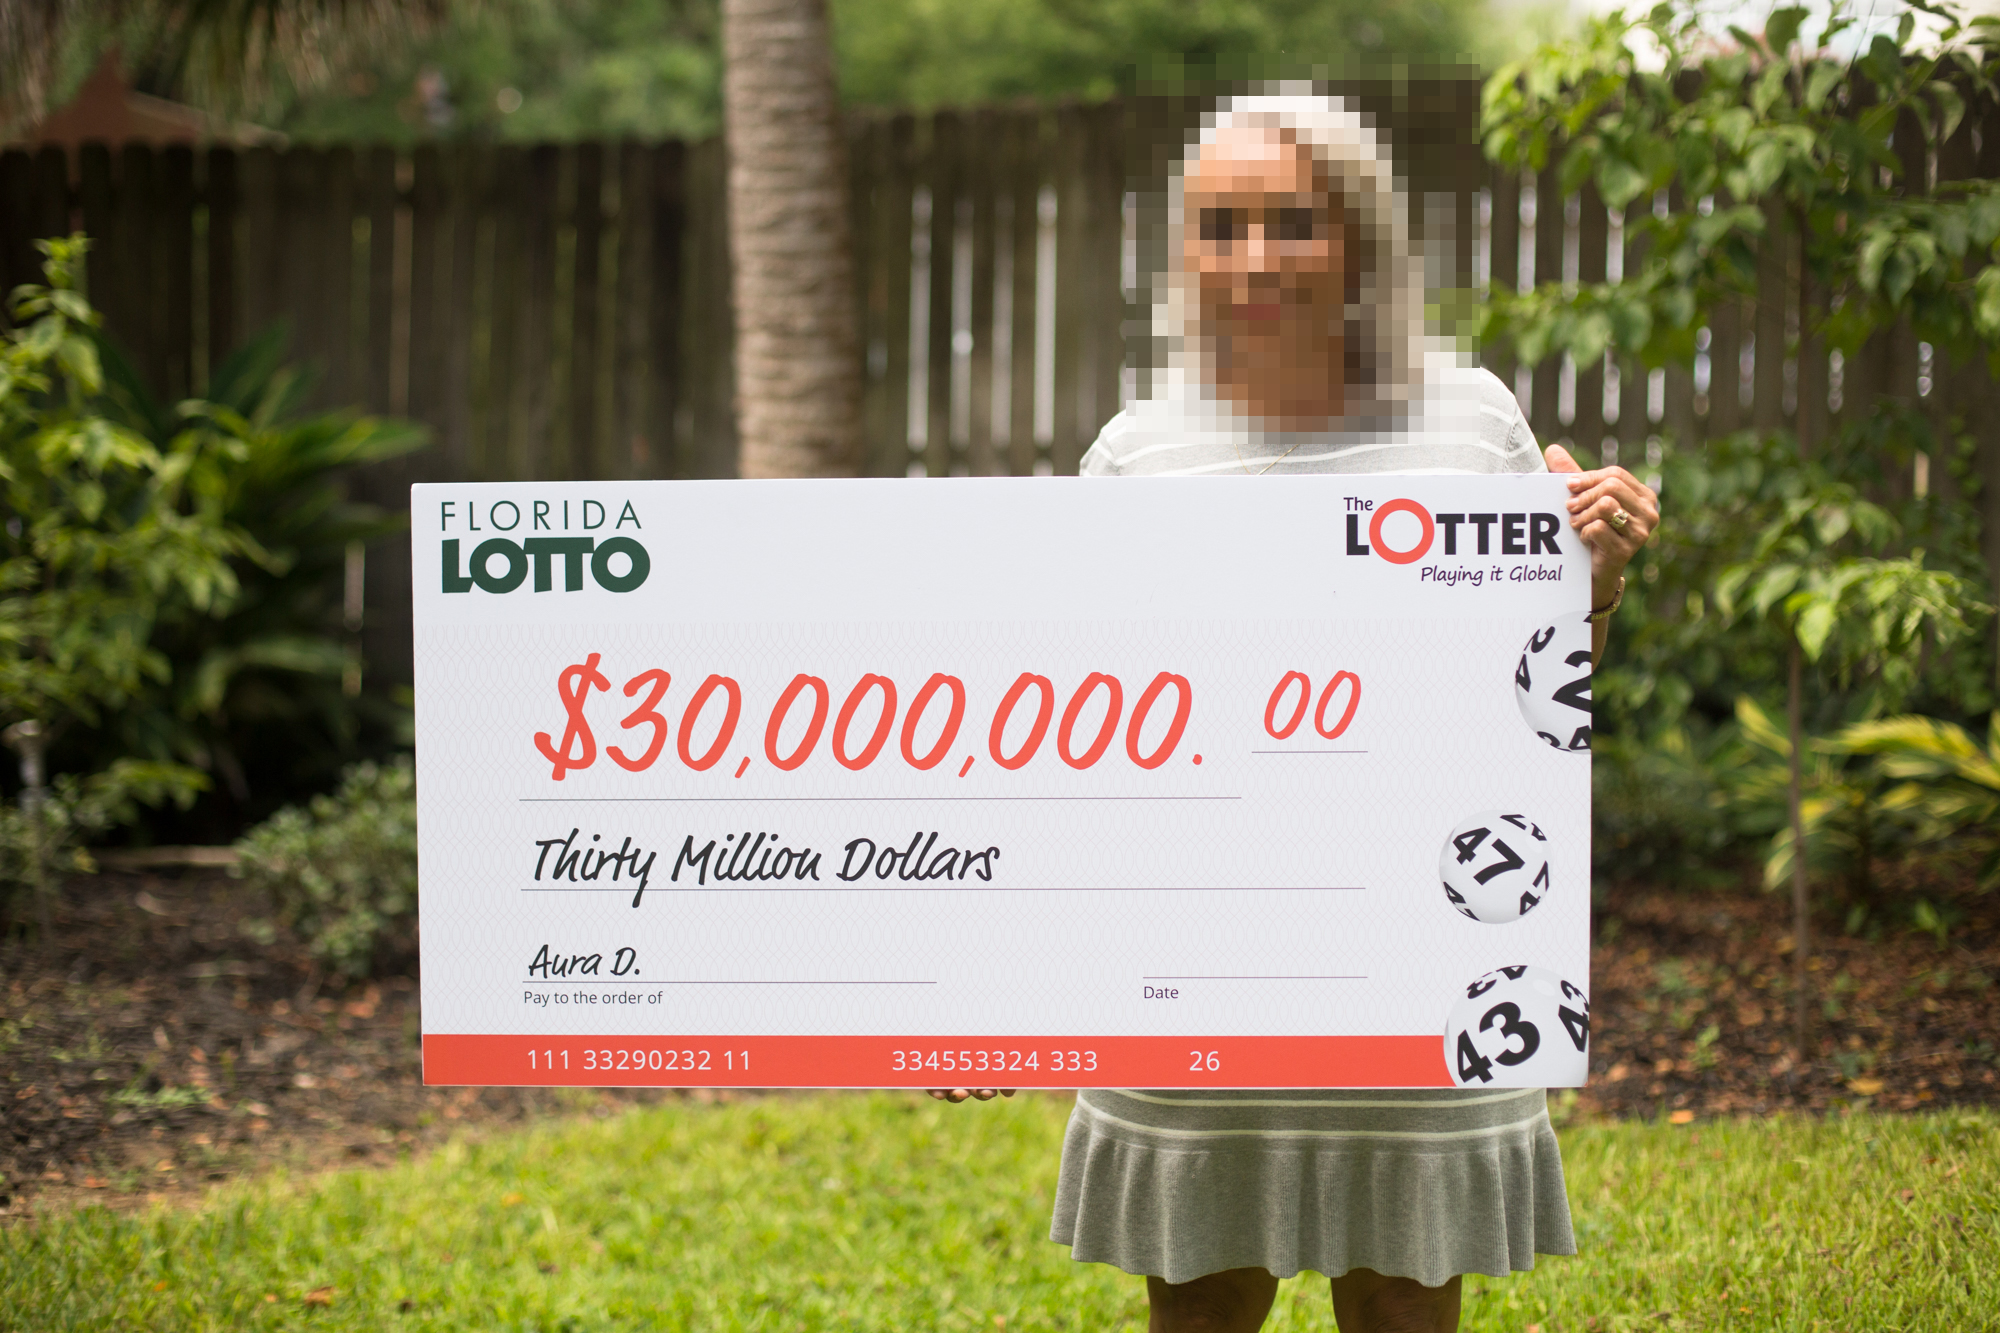 A maior vencedora da TheLotter é uma mulher panamenha que acertou todos os seis números vencedores no sorteio da Florida Lotto em 19 de julho de 2017, tornando-se a única vencedora do jackpot de 30 milhões de dólares